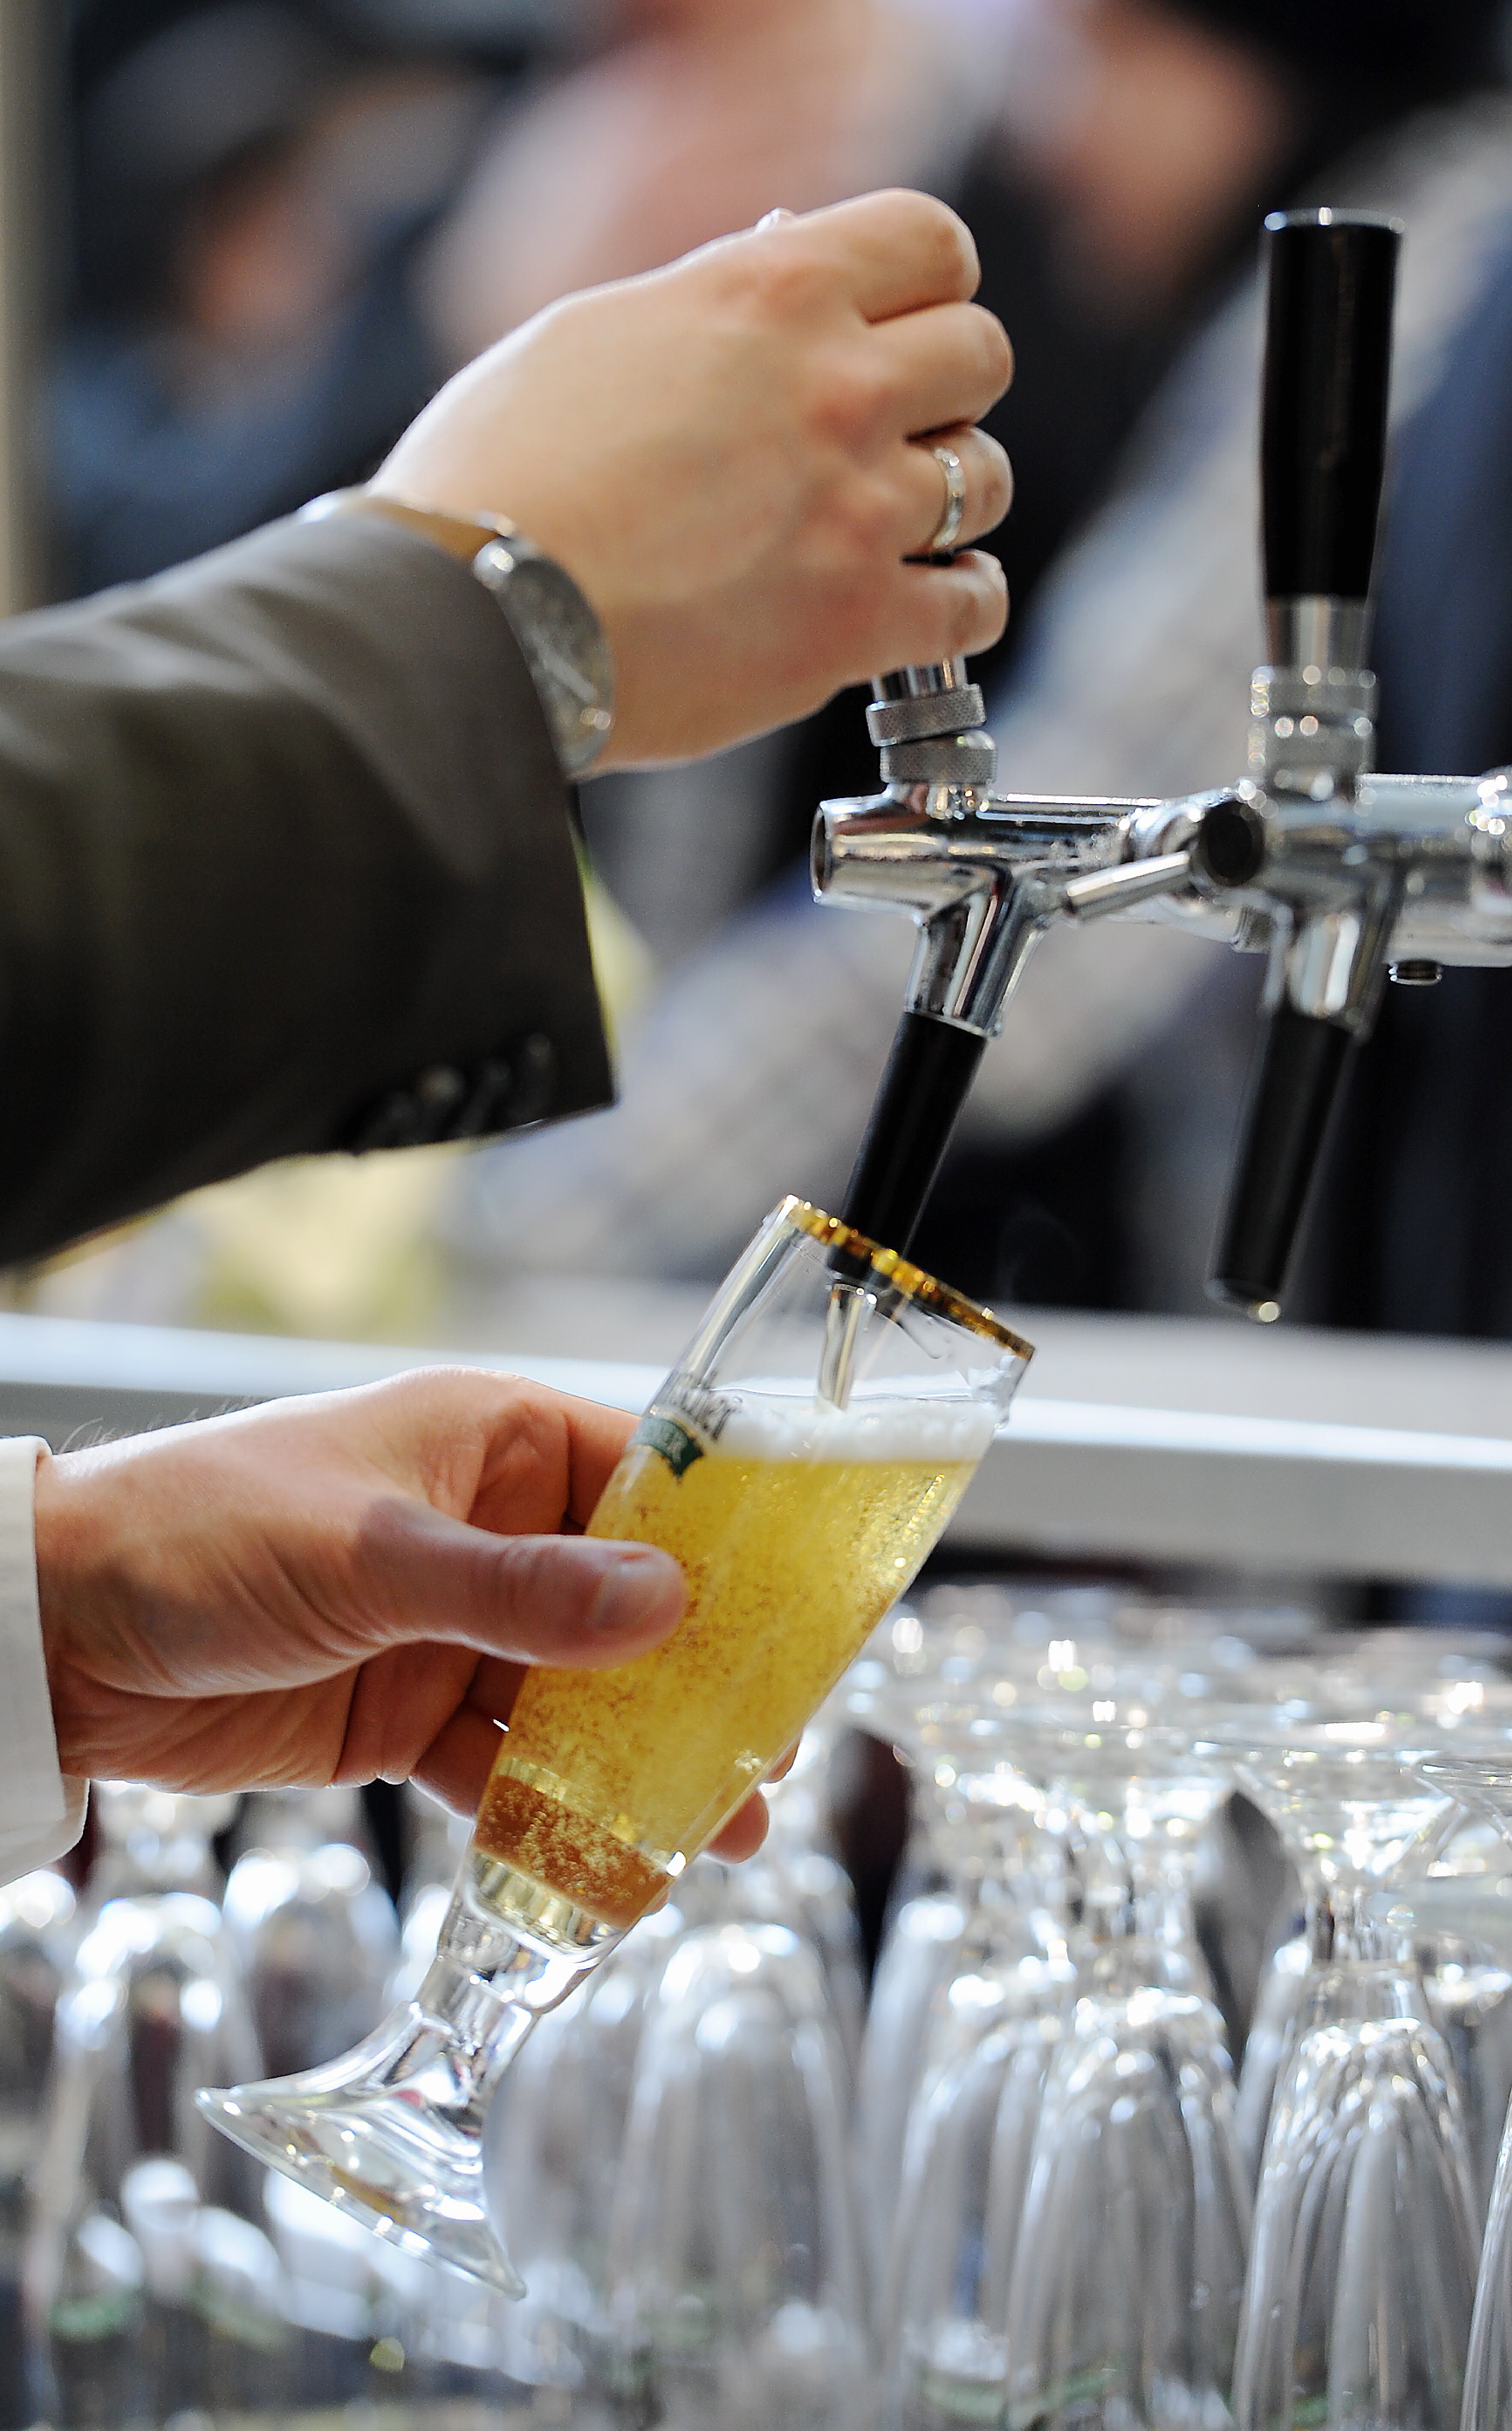 Bier wurde künstlich verteuert - Nun verhängte das Bundeskartellamt Millionen-Bußgelder gegen führende deutsche Brauereien wegen illegaler Preisabsprachen